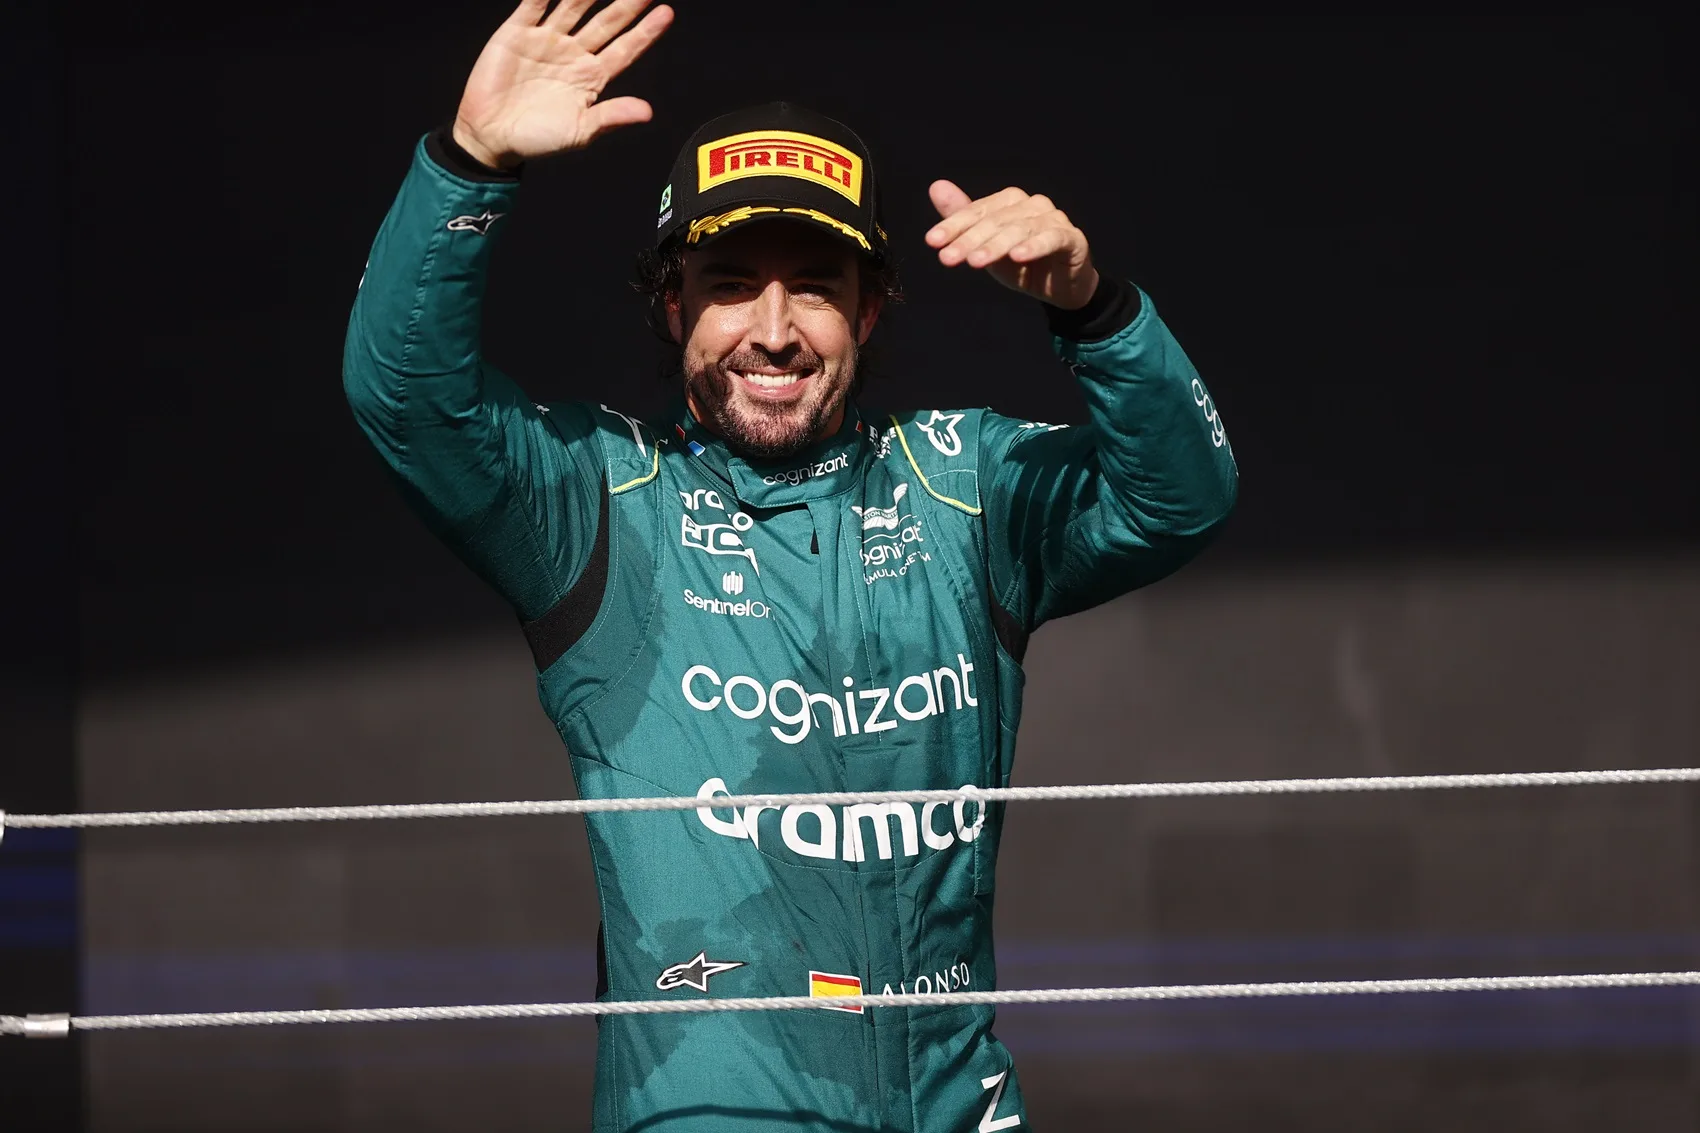 A Hondától izgatottan váró Alonso: az életét versenyzés nélkül nem tudja elképzelni